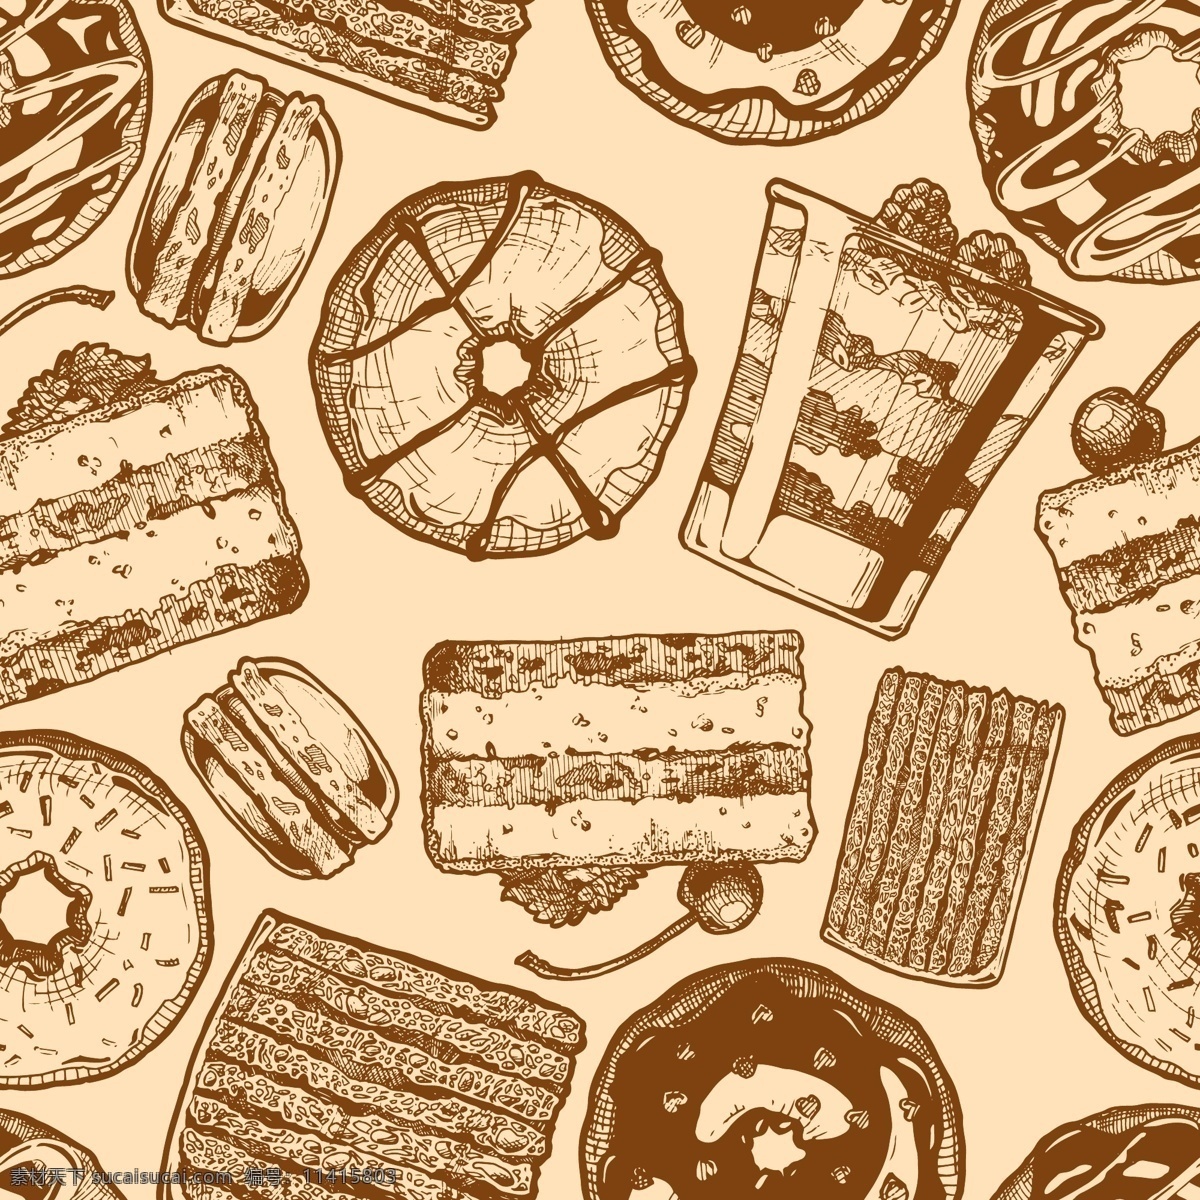 食品 蛋糕 面包 绘制 绘画 烘焙 糕点 羊角面包 产品 甜甜圈 绘制草图 美味 手绘 手绘面包 手绘饼干